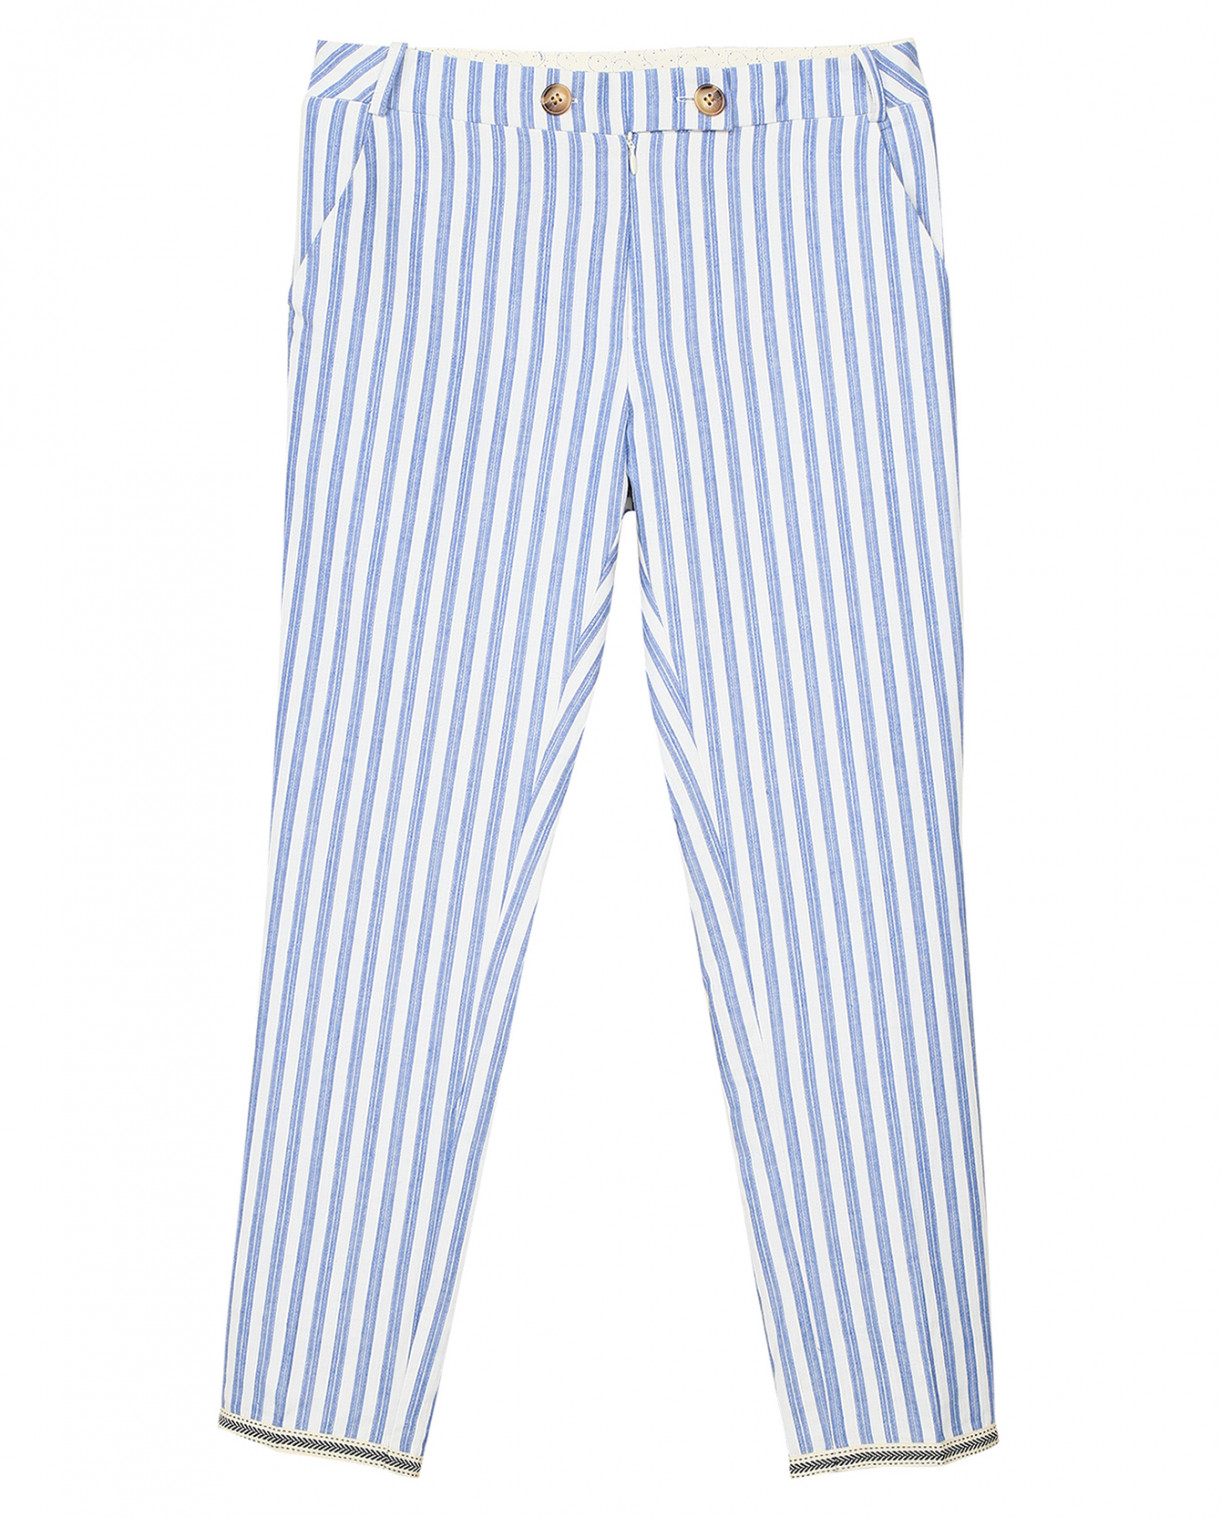 Полосатые брюки из хлопка Tinsels  –  Общий вид  – Цвет:  Узор